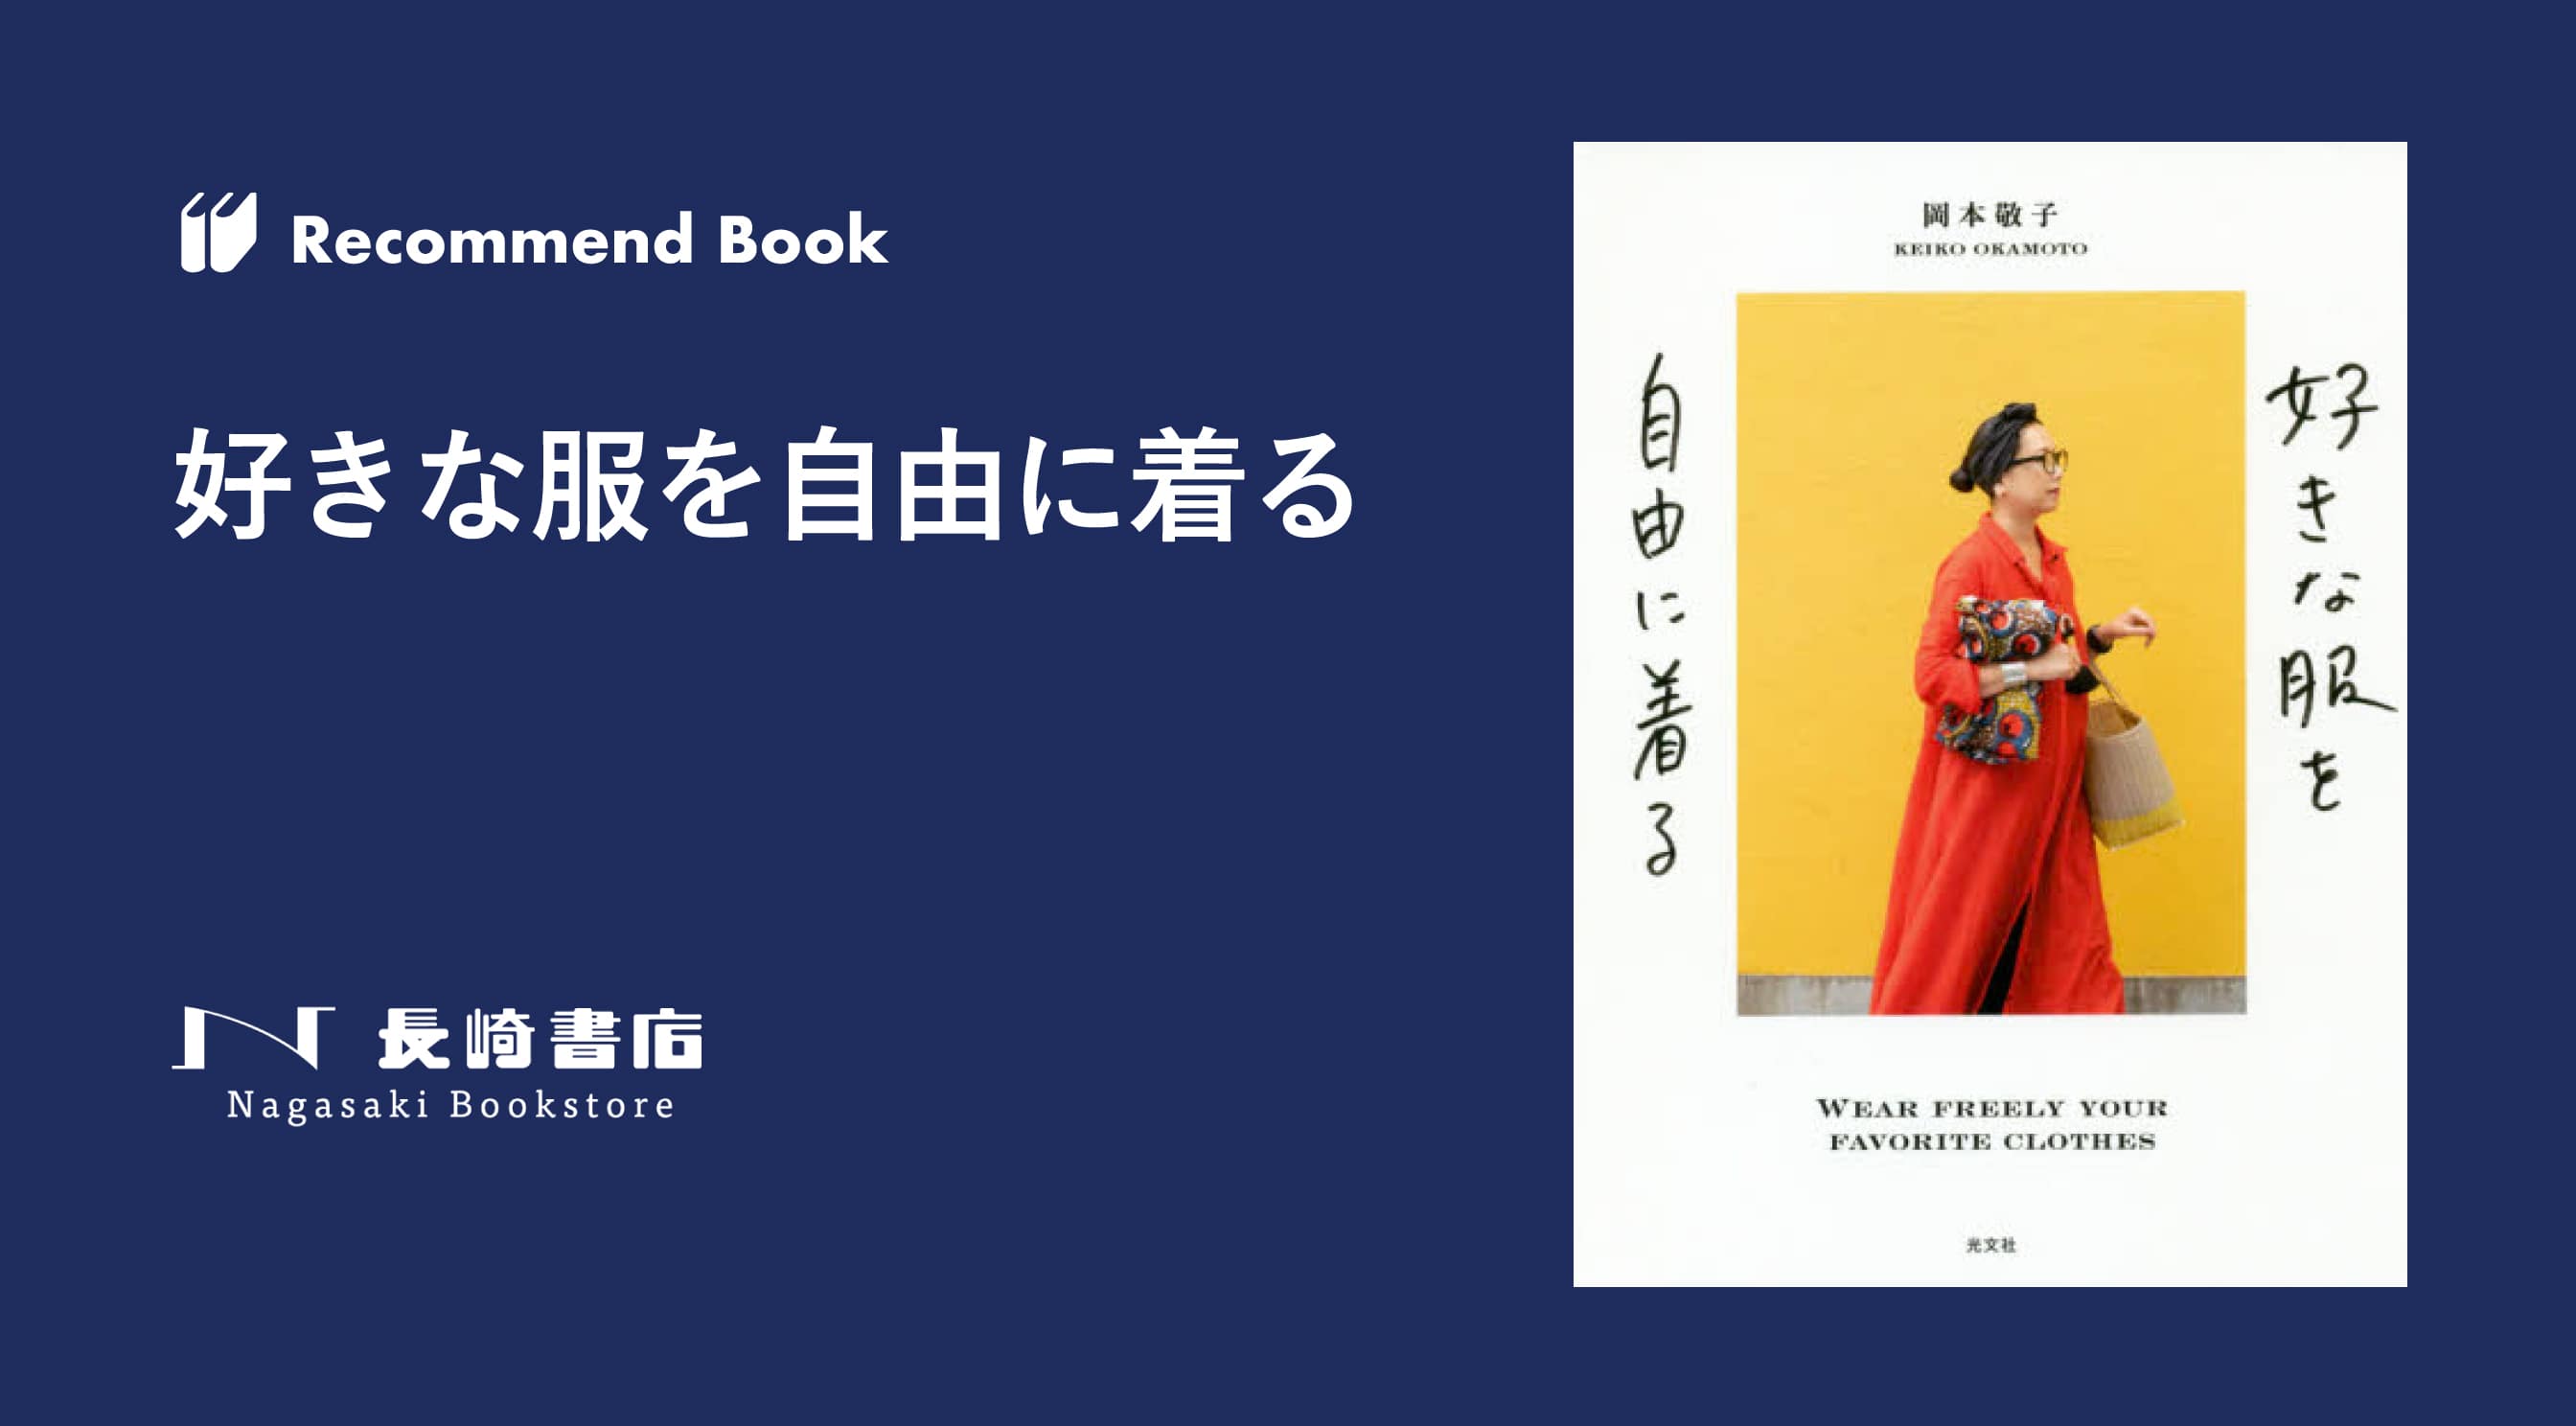 推薦書籍 Vol 23 好きな服を自由に着る アートヒューマンプロジェクト 熊本のアート カルチャー情報サイト